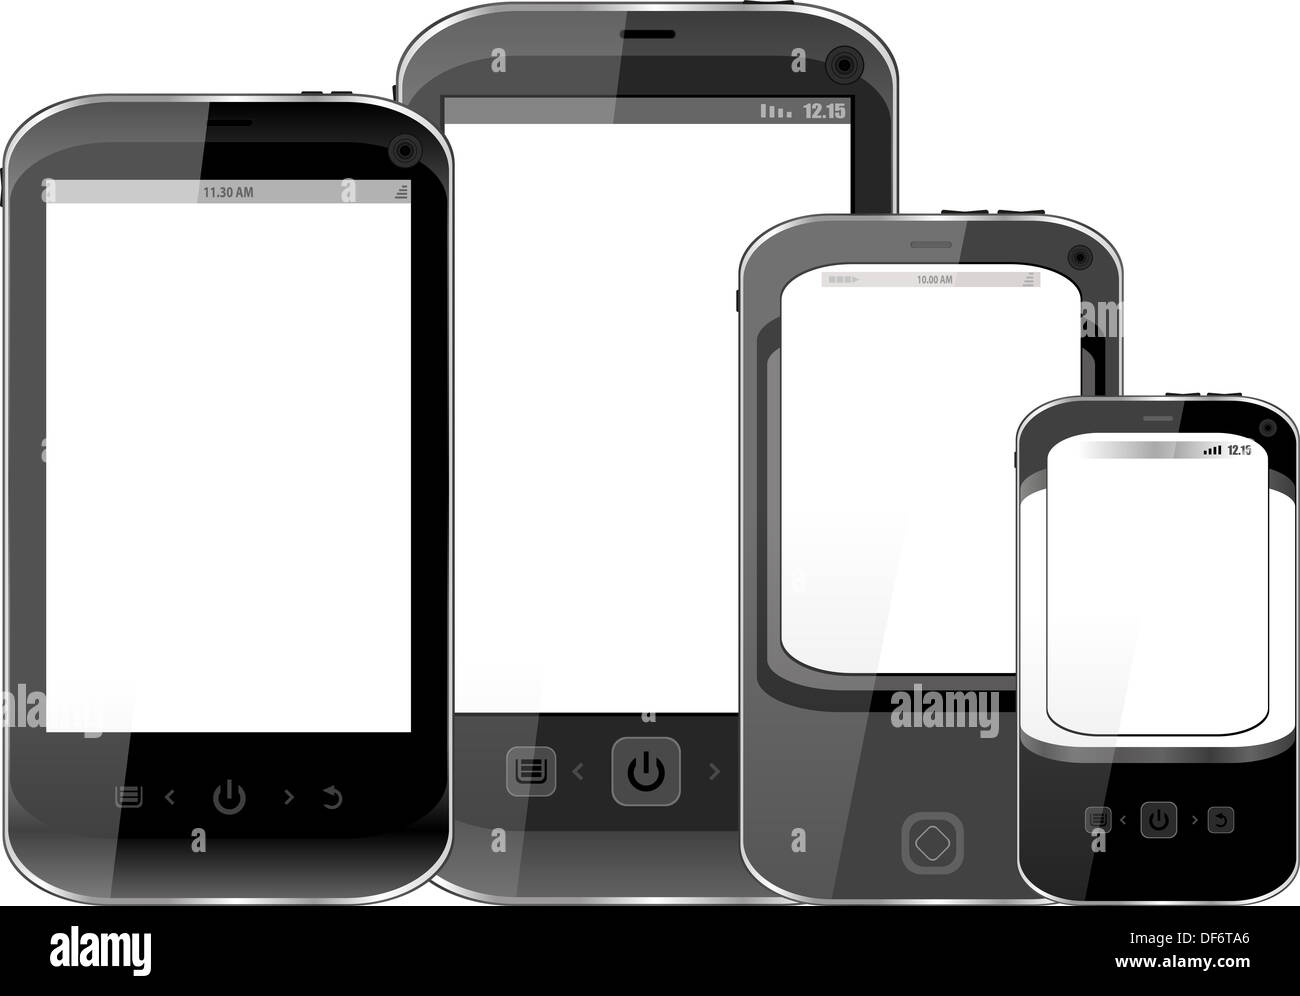 Fotorealistische Darstellung von verschiedenen Smartphones mit Exemplar auf dem Bildschirm - isoliert Stockfoto